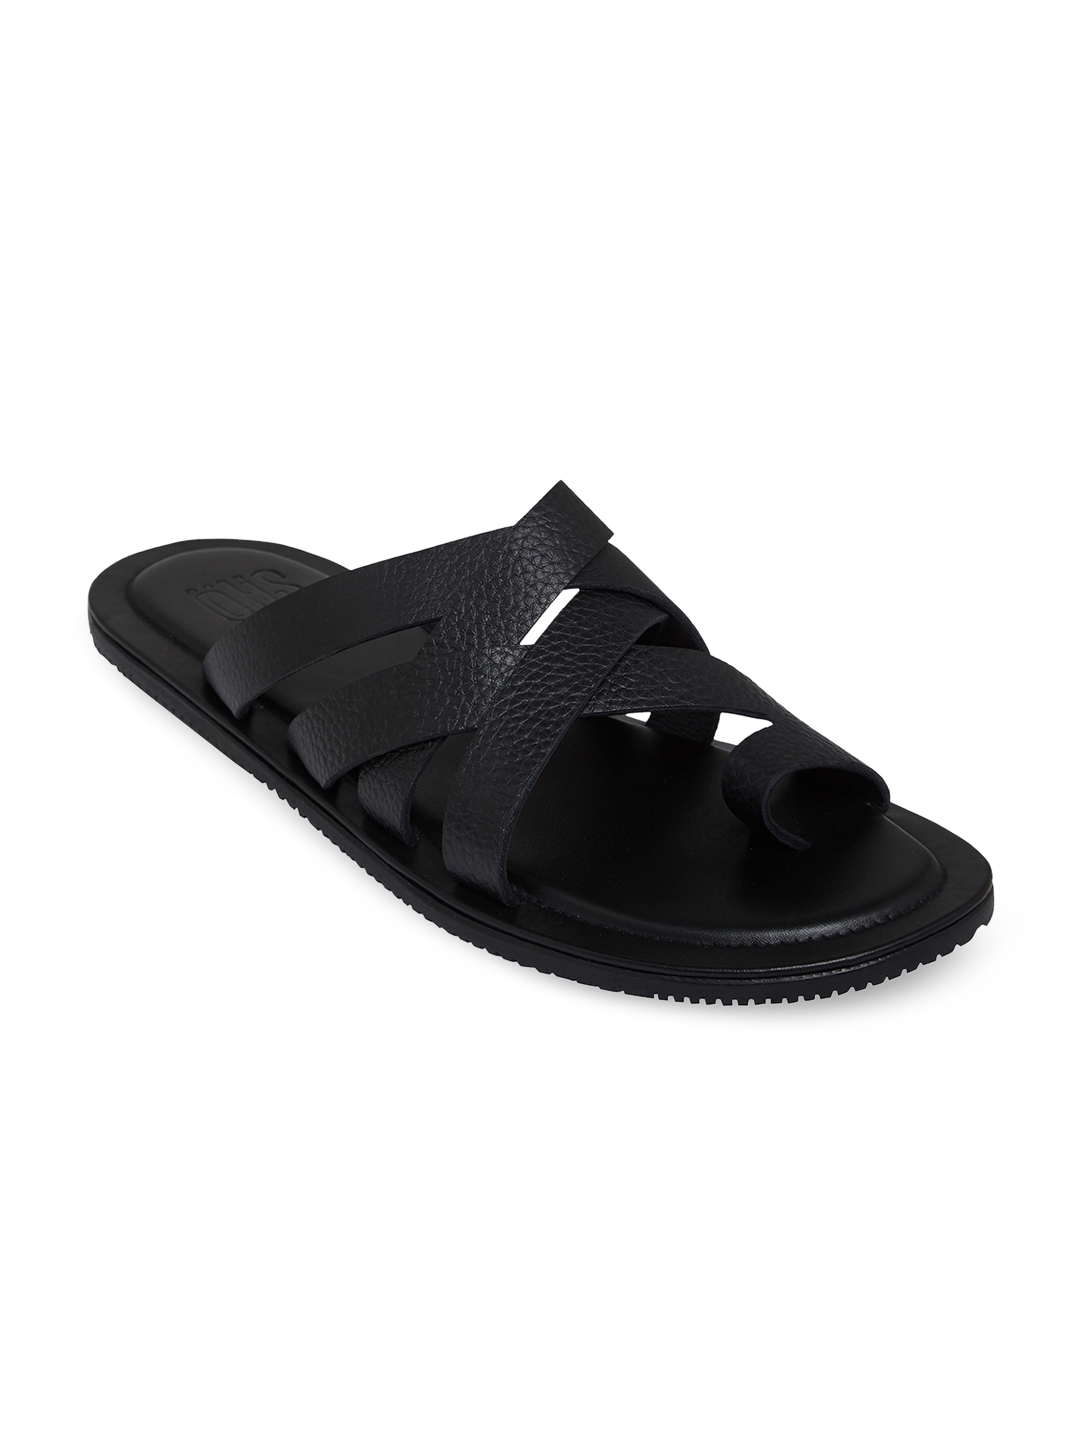 Buy SKO Men Black Comfort Leather Sandals - Sandals for Men 7471731 ...